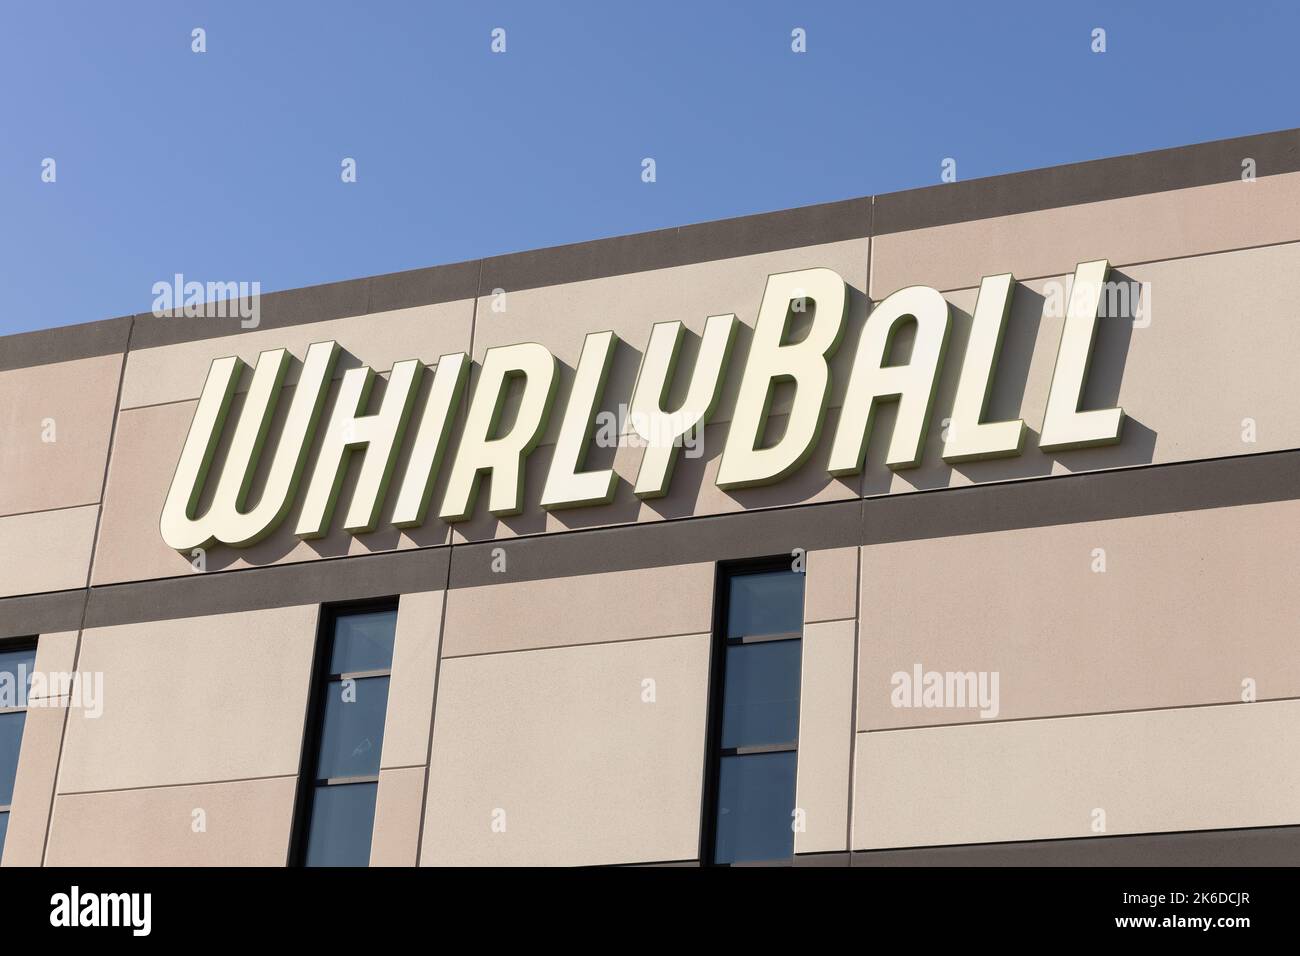 WhirlyBall est un sport qui combine basket-ball, crosse, et hockey sur des voitures de pare-chocs qui est amusant pour toute la famille. Banque D'Images